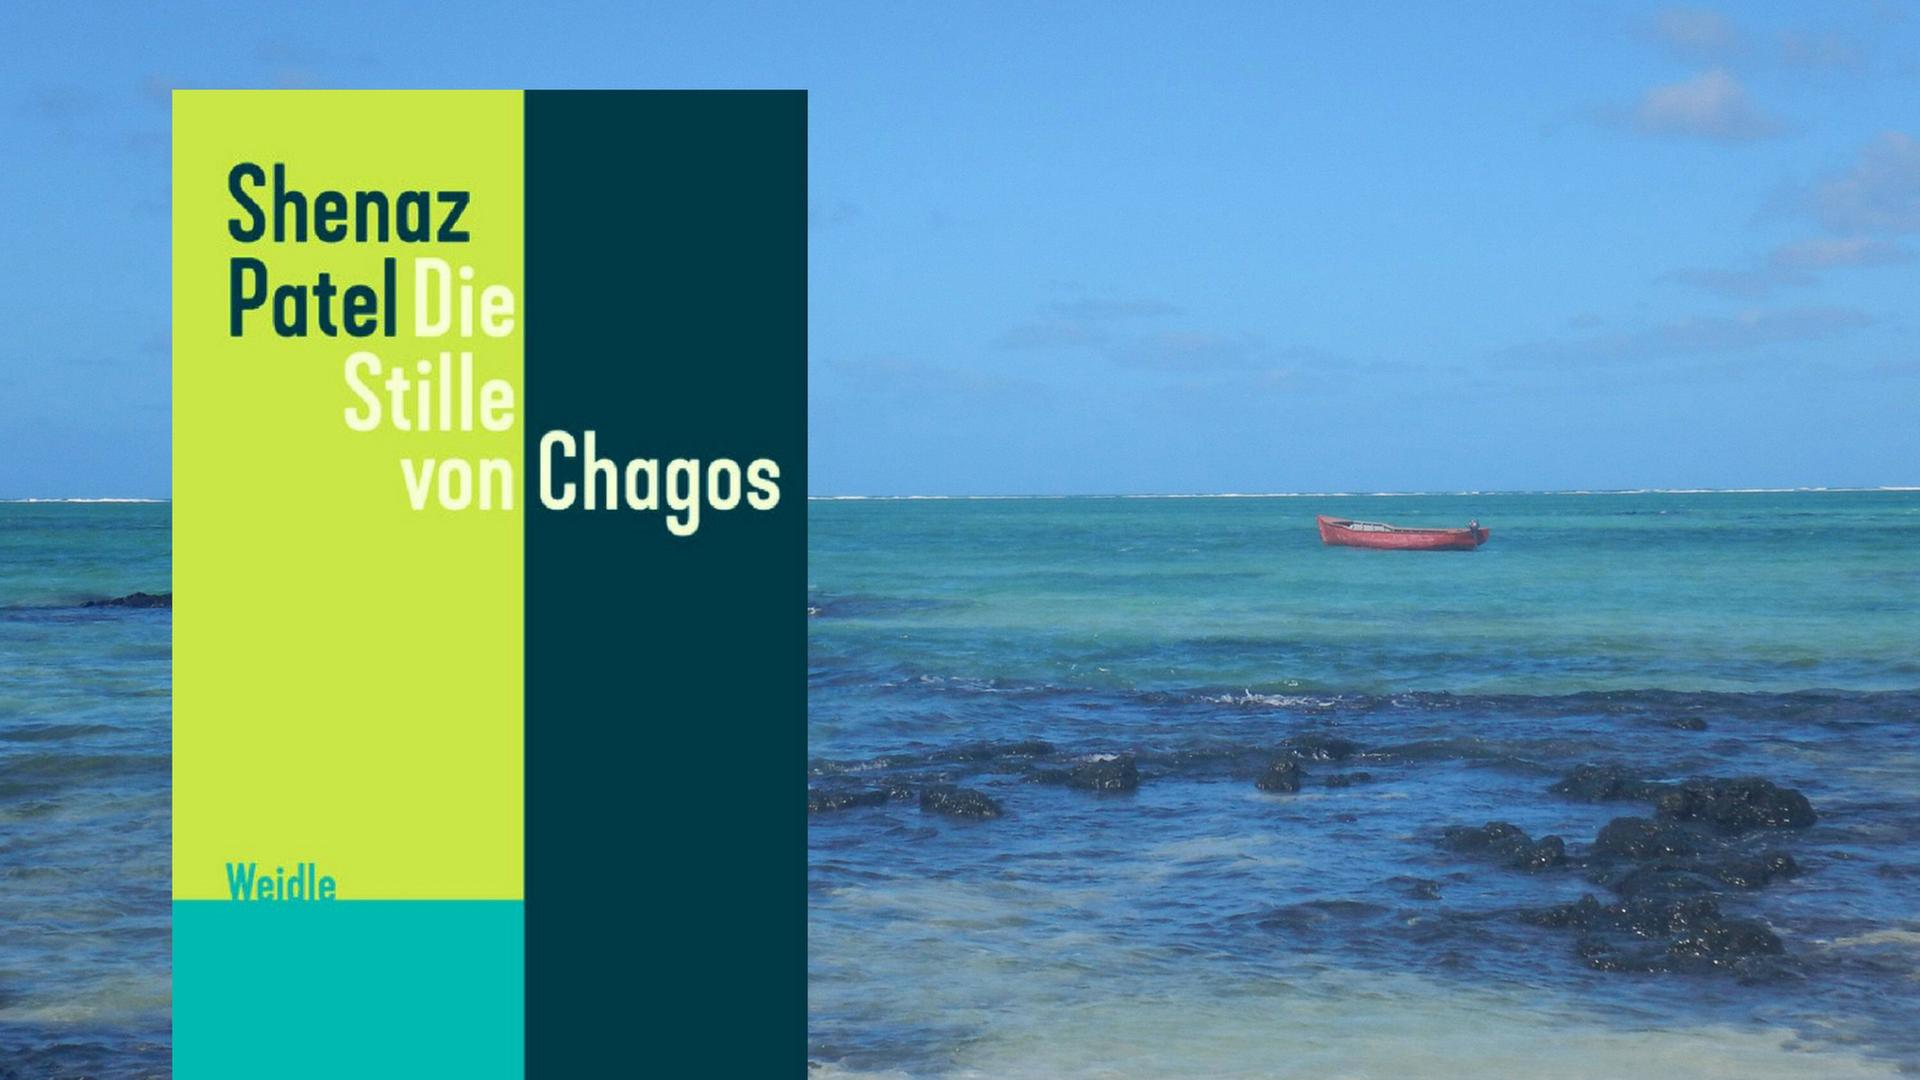 Buchcover: "Shenaz Patel: Die Stille von Chagos" und Blick aufs Meer